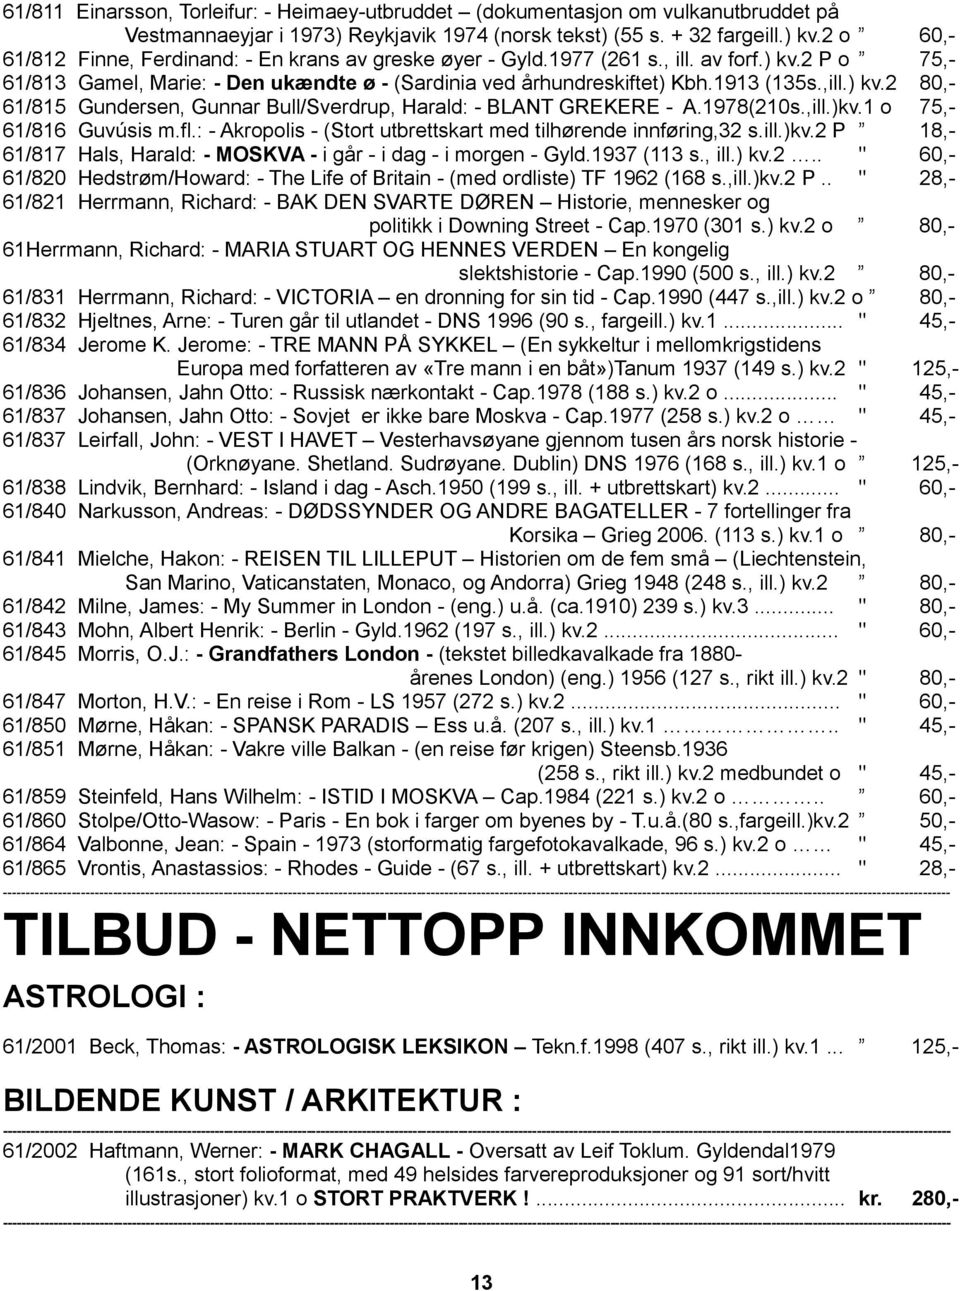 ) kv.2 80,- 61/815 Gundersen, Gunnar Bull/Sverdrup, Harald: - BLANT GREKERE - A.1978(210s.,ill.)kv.1 o 75,- 61/816 Guvúsis m.fl.: - Akropolis - (Stort utbrettskart med tilhørende innføring,32 s.ill.)kv.2 P 18,- 61/817 Hals, Harald: - MOSKVA - i går - i dag - i morgen - Gyld.